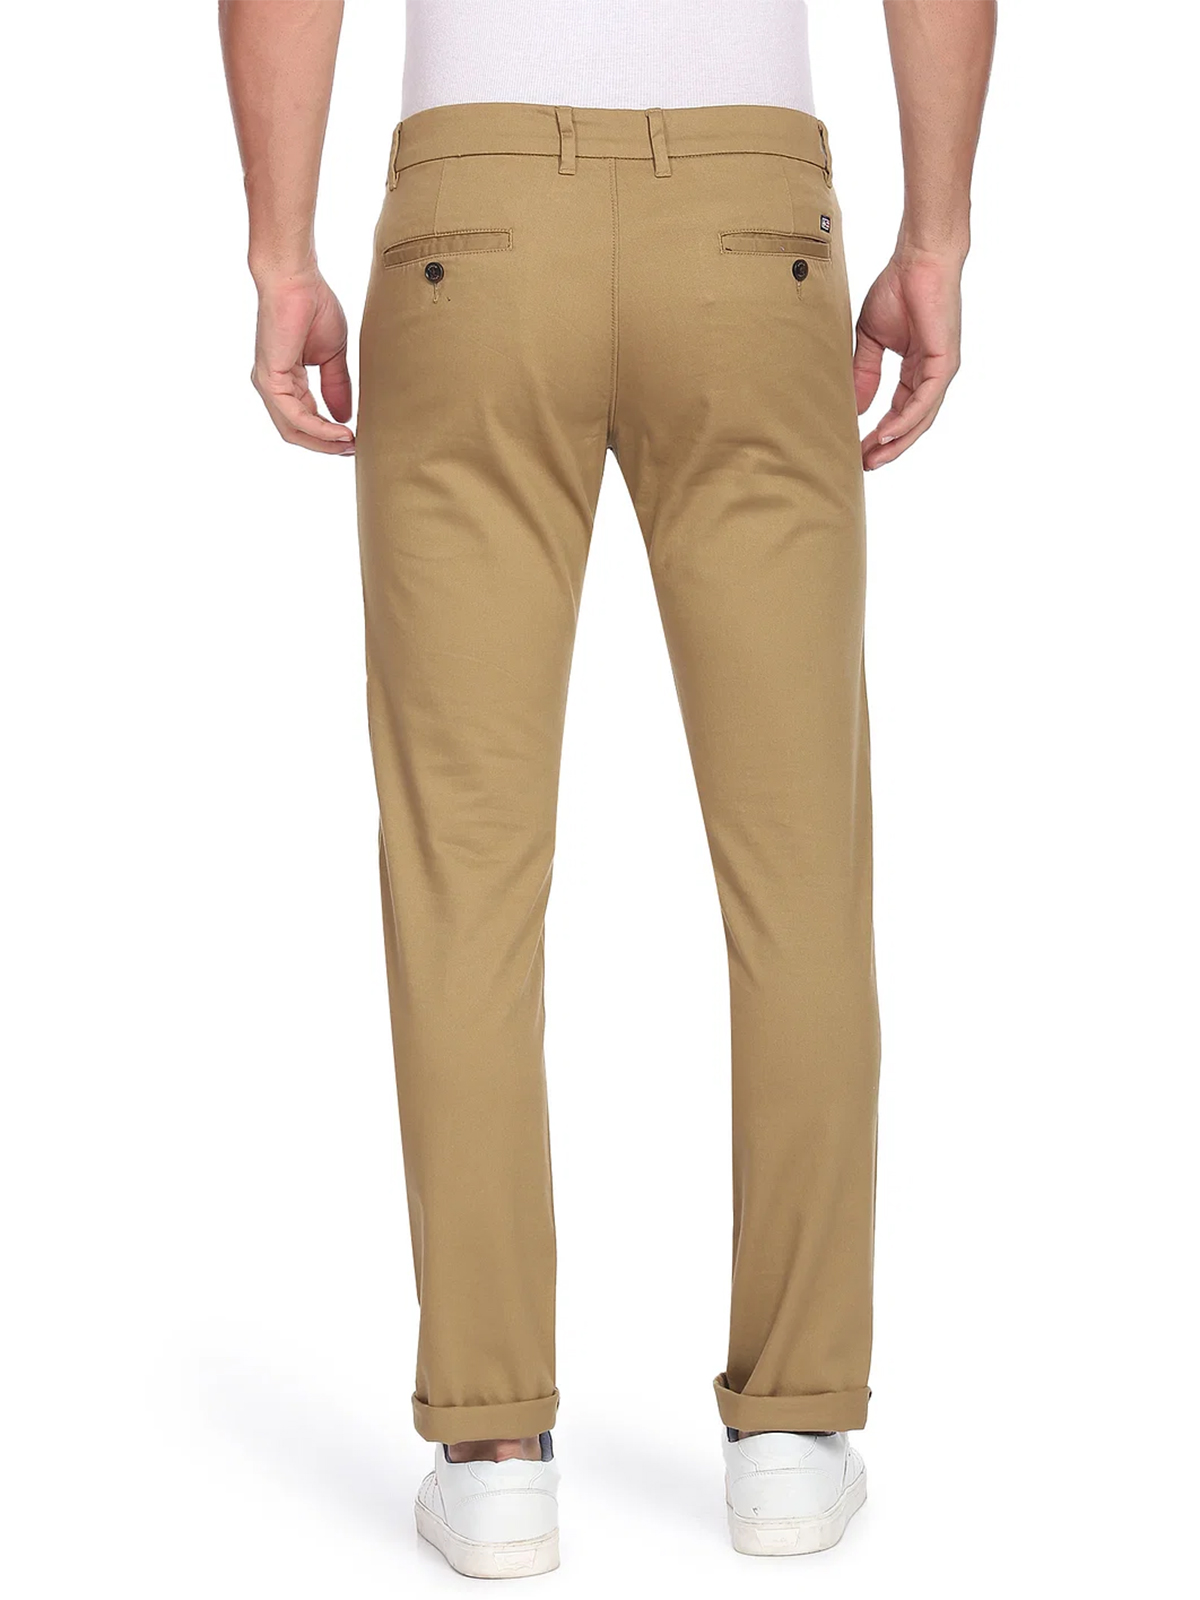 ARROW Regular Fit Men Grey Trousers - Buy ARROW Regular Fit Men Grey  Trousers Online at Best Prices in India | Flipkart.com